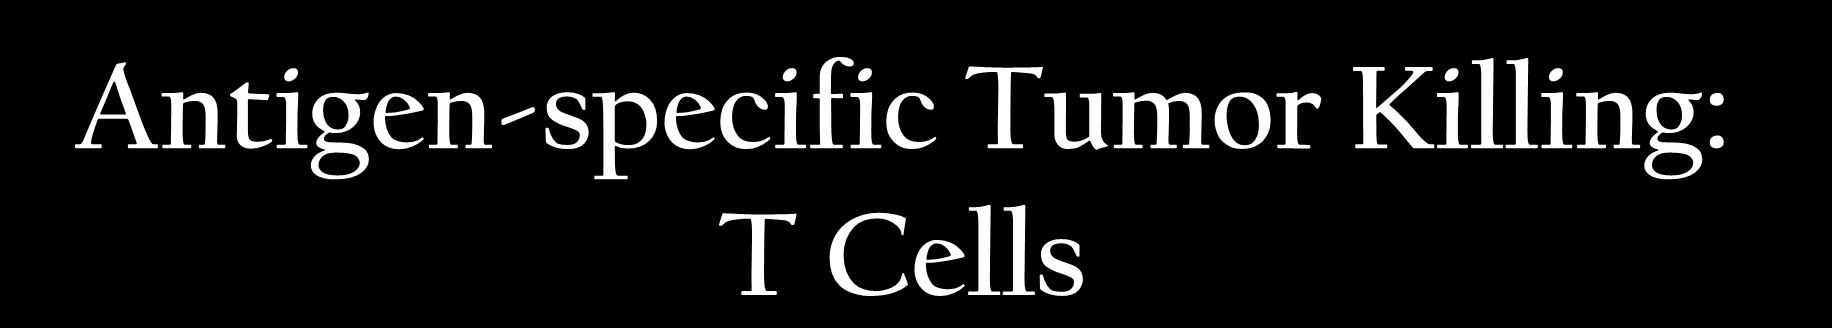 peptide MHCI Antigen-specific Tumor Killing: T Cells T